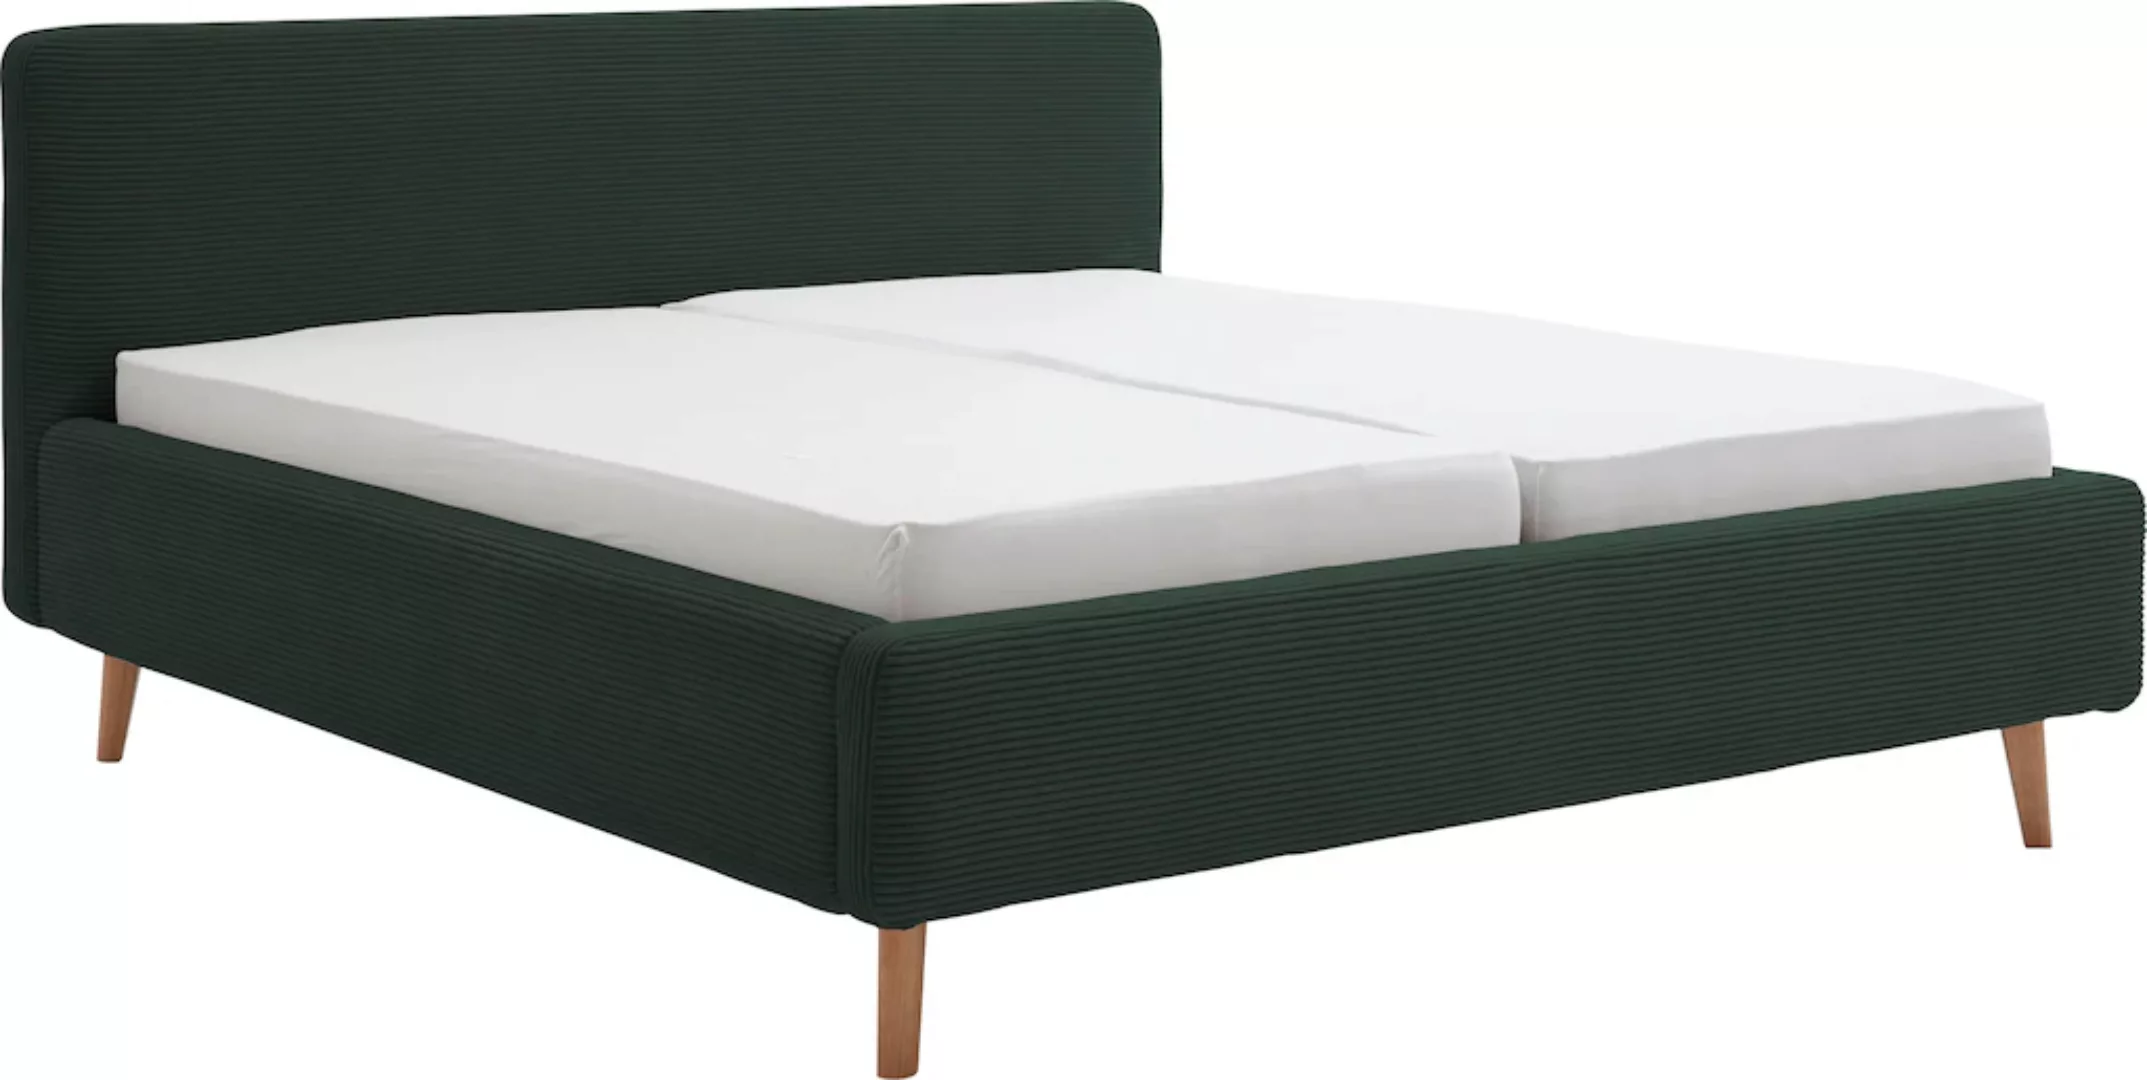 meise.möbel Polsterbett aus Polyester in dunkelgrün. Abmessungen (LxBxH) 22 günstig online kaufen